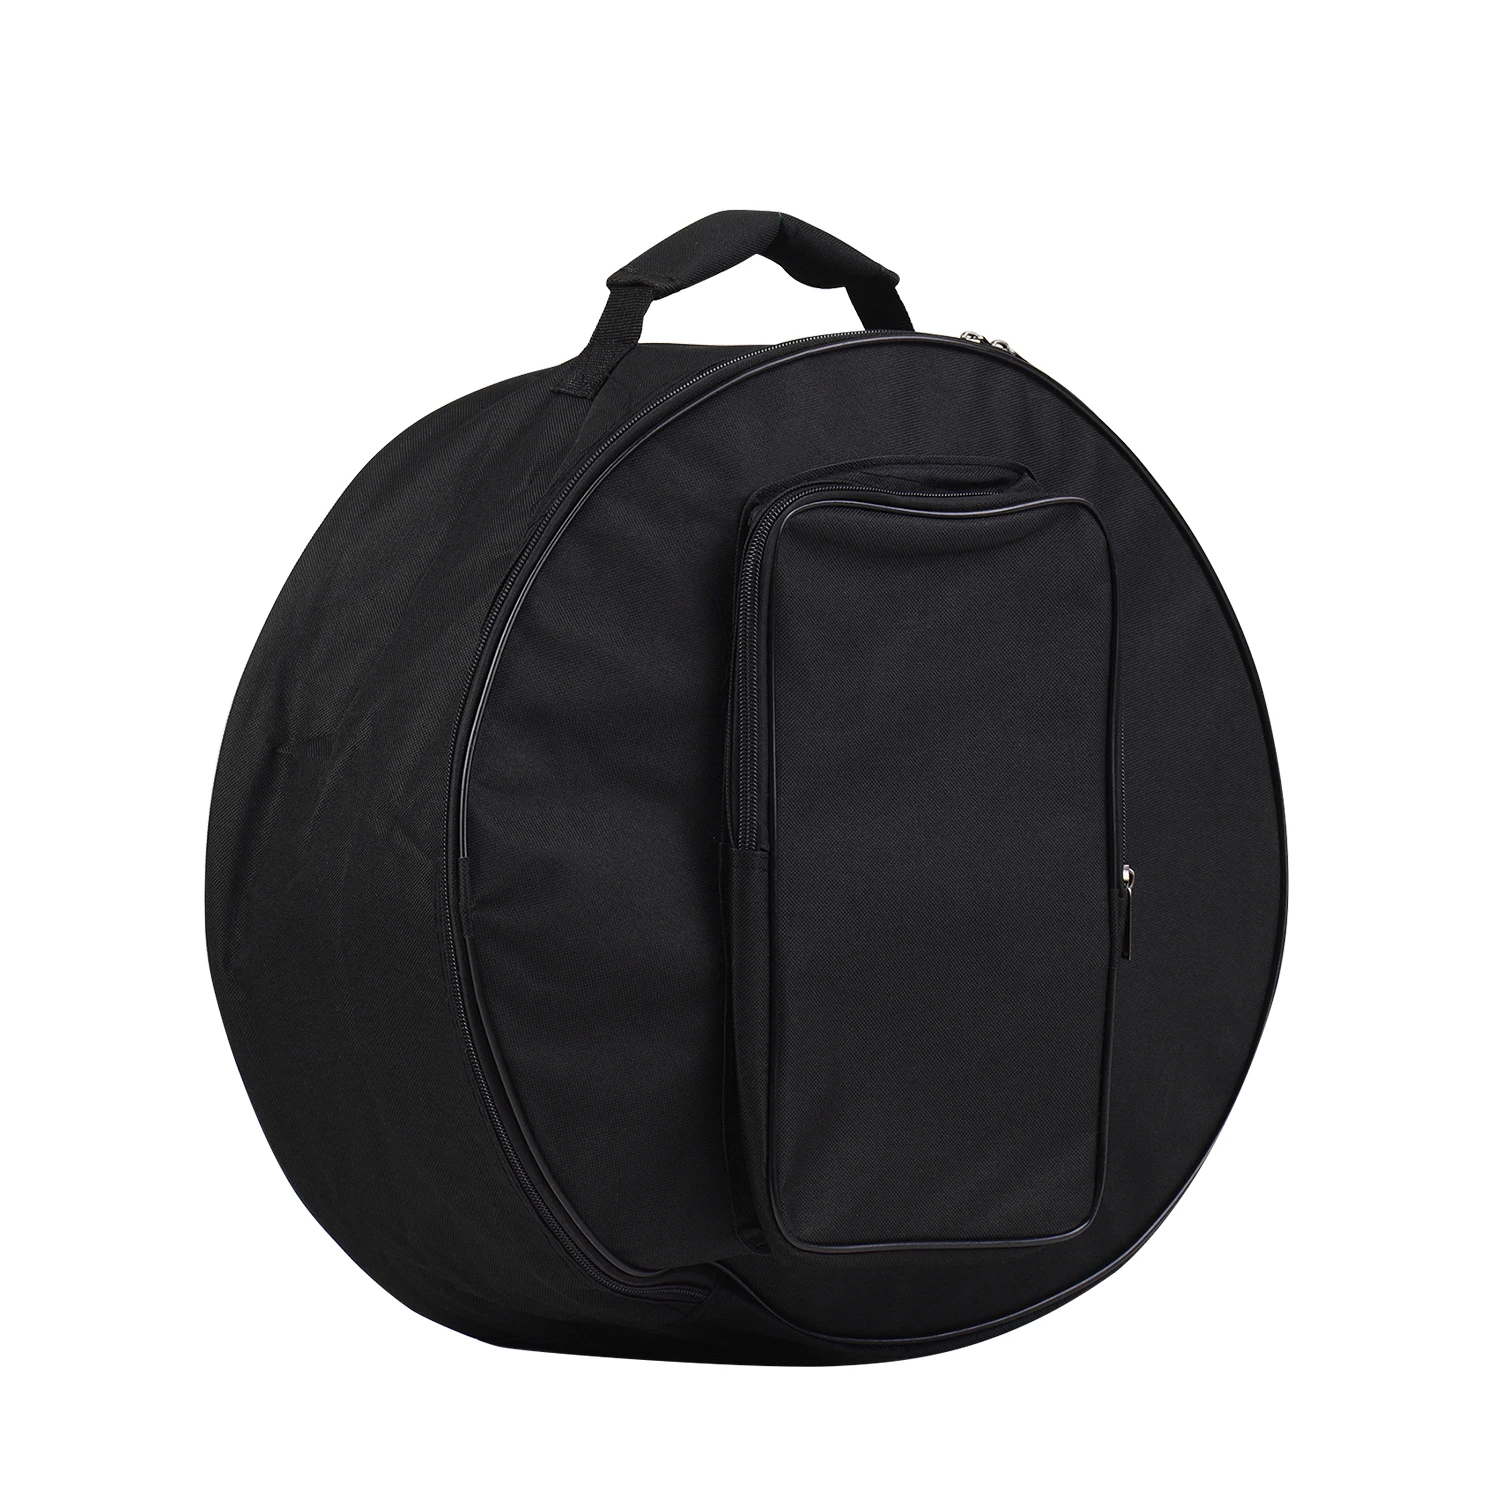 Мини-сумка для барабана, чехол-рюкзак с плечевым ремнем, внешние карманы, аксессуары для ударных инструментов